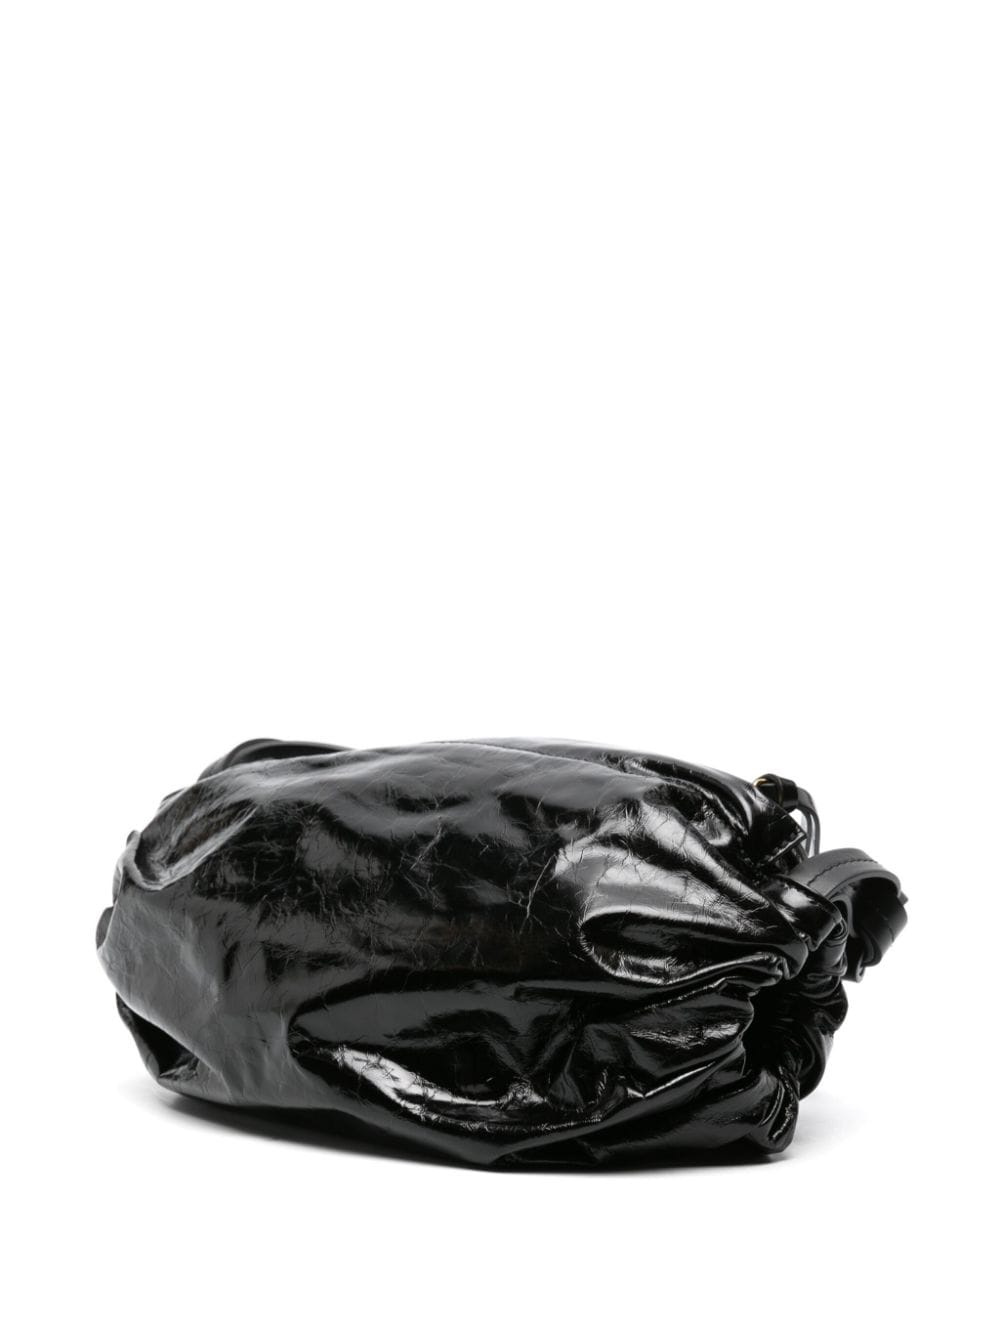 Black Patent Leather Ruched Shoulder Handbag